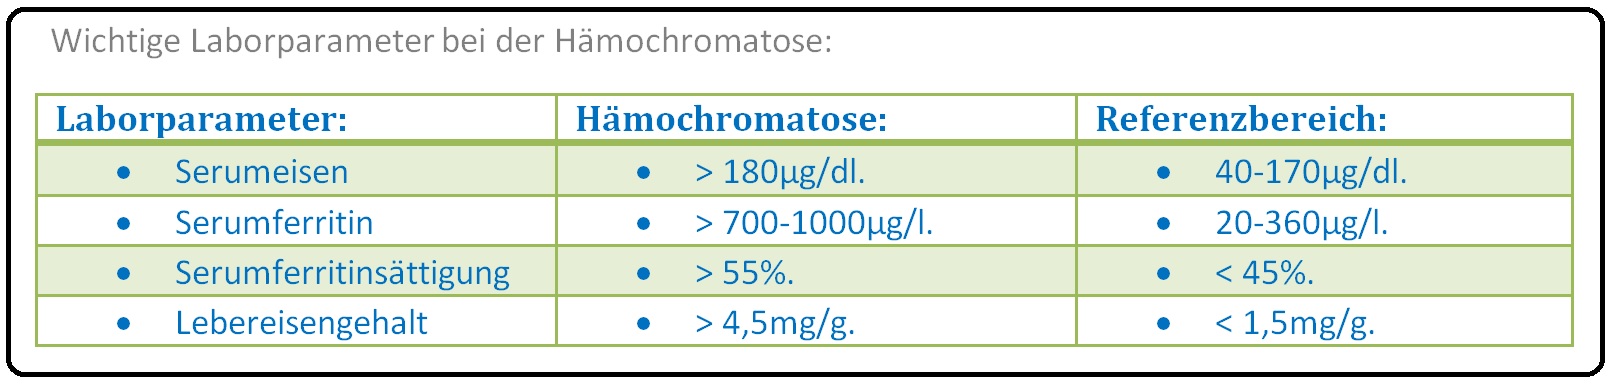 557 WIchtige Laborparameter bei der Hämochromatose